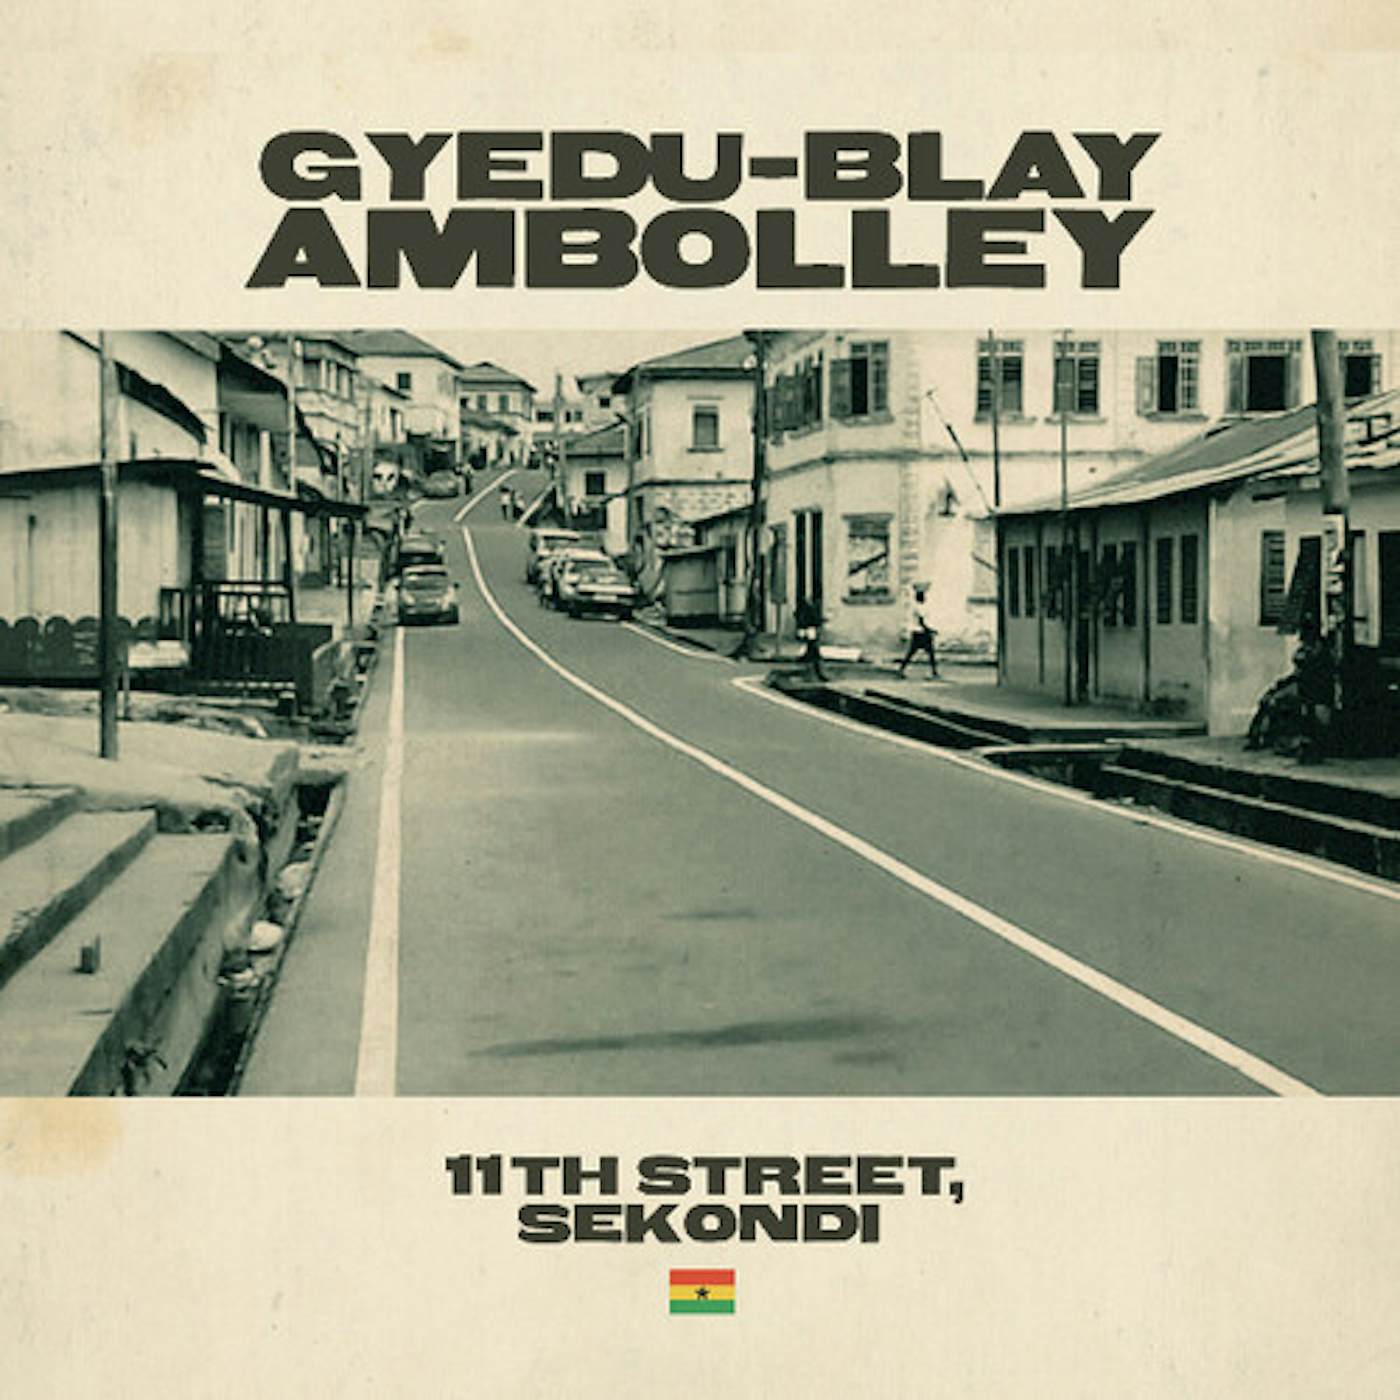 Gyedu-Blay Ambolley 12TH STREET SEKONDI Vinyl Record